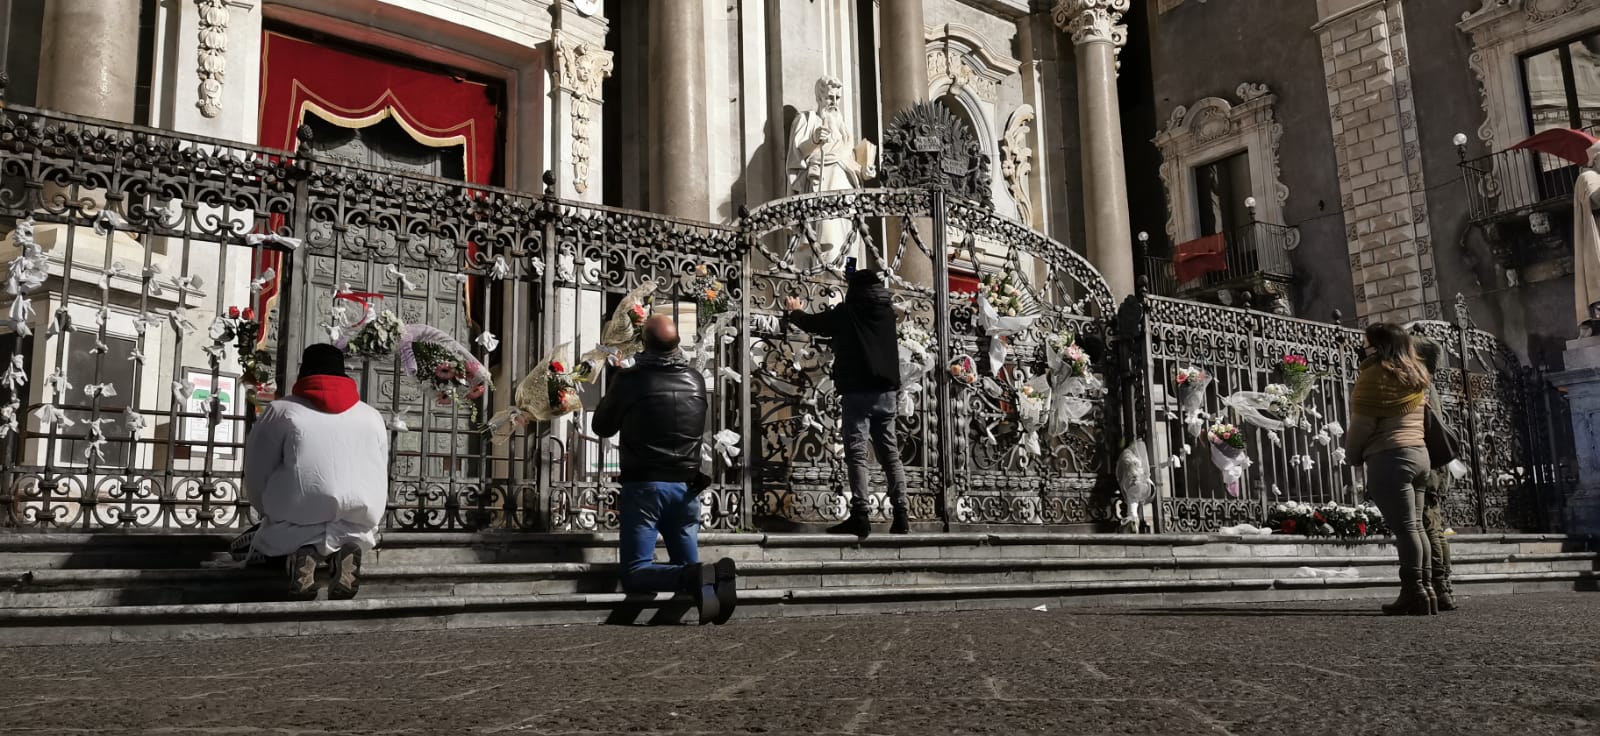 “Semu tutti devoti tutti”, nemmeno la pandemia ferma la fede per Sant’Agata: si prega in piazza Duomo – FOTO